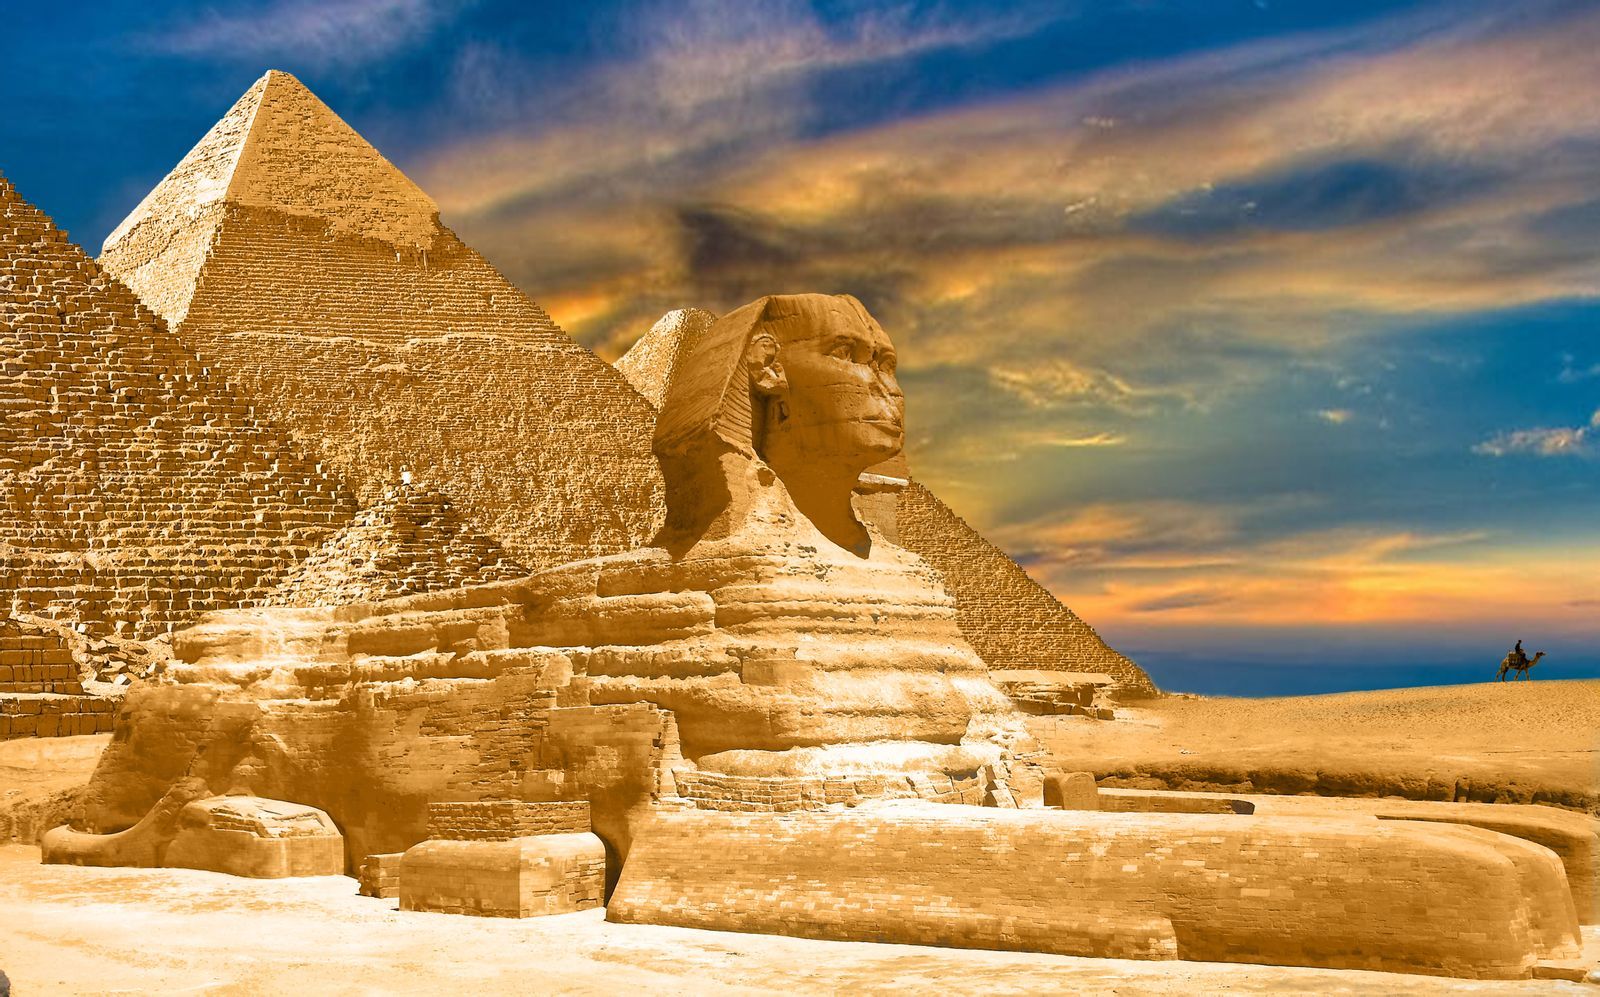 埃及法老和金字塔电脑桌面高清壁纸-壁纸下载-www.pp3.cn